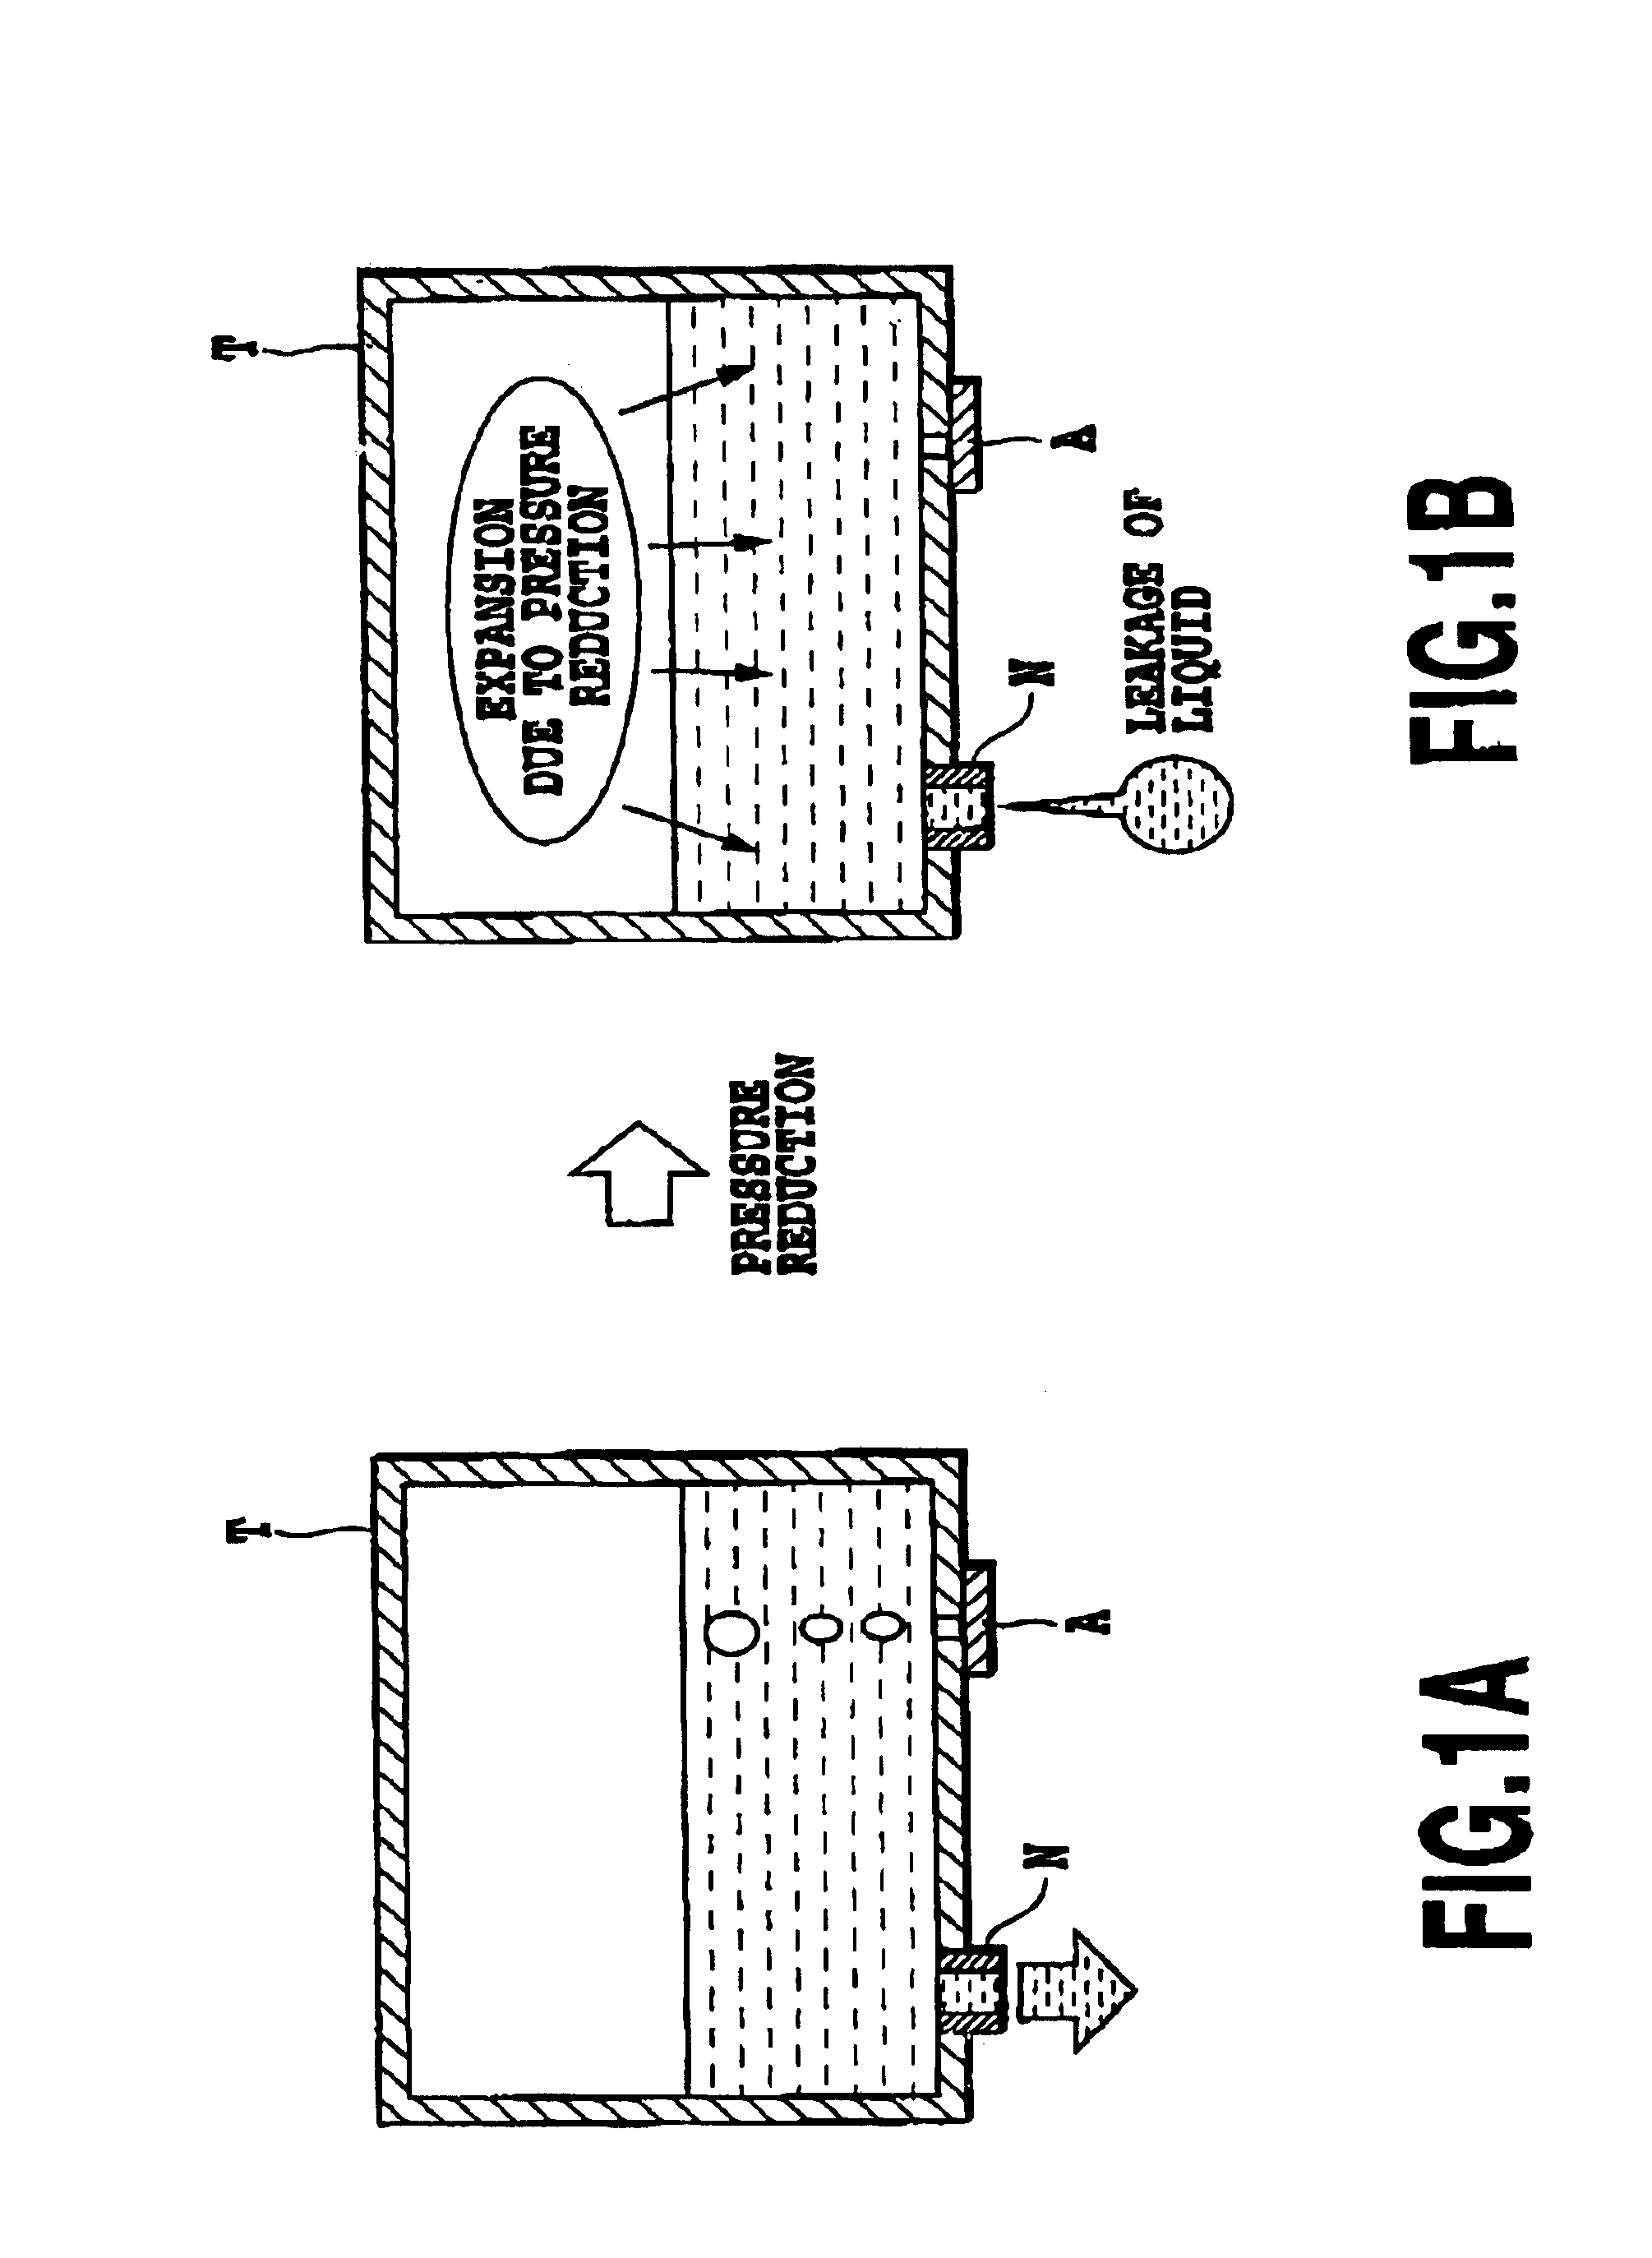 Liquid container, liquid supplying apparatus, and recording apparatus